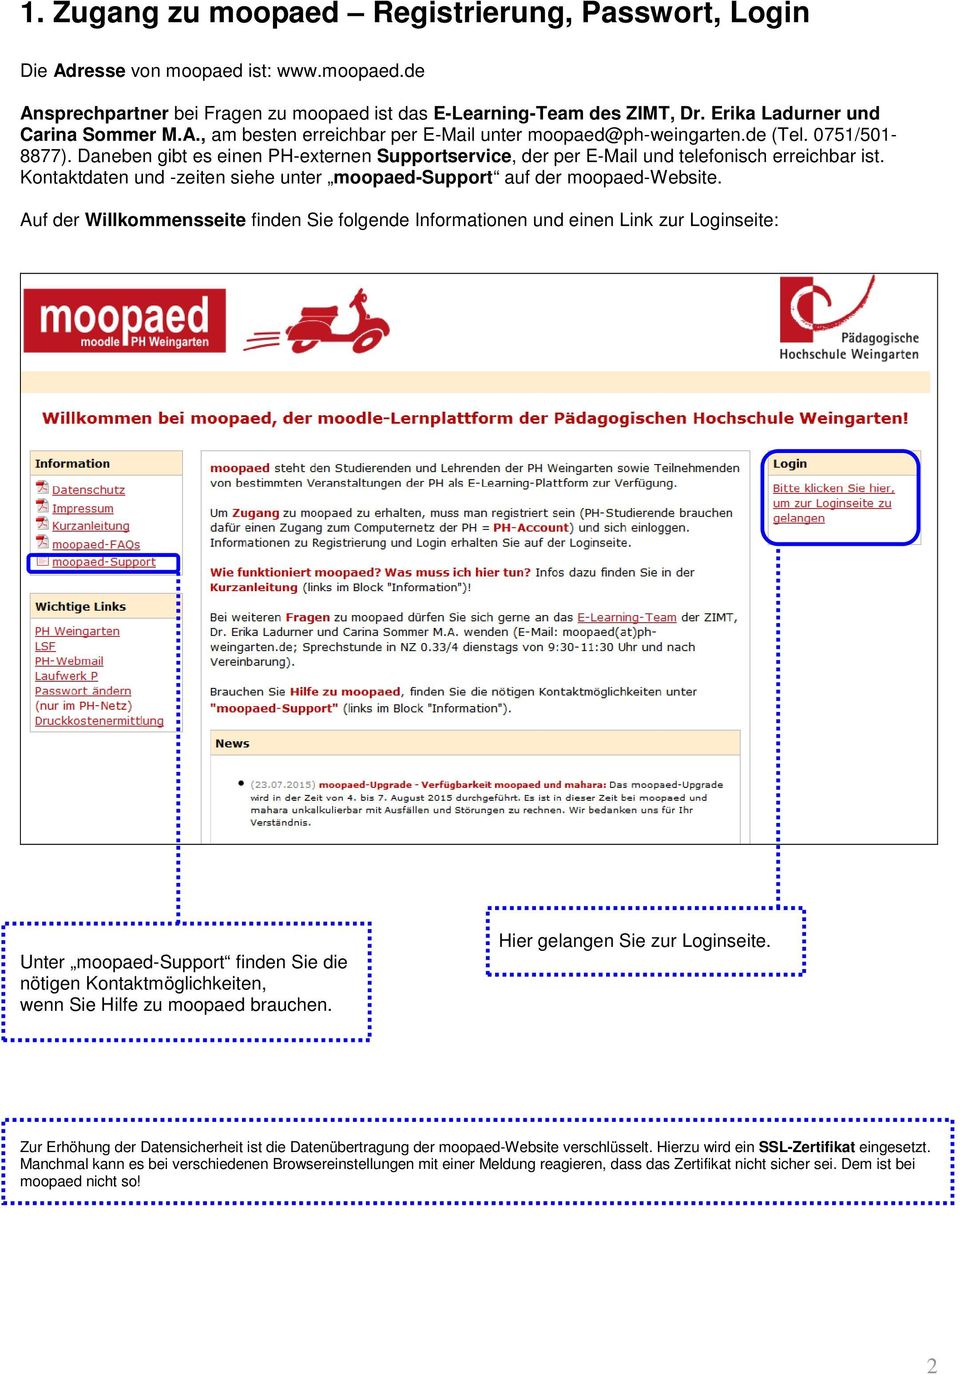 Daneben gibt es einen PH-externen Supportservice, der per E-Mail und telefonisch erreichbar ist. Kontaktdaten und -zeiten siehe unter moopaed-support auf der moopaed-website.